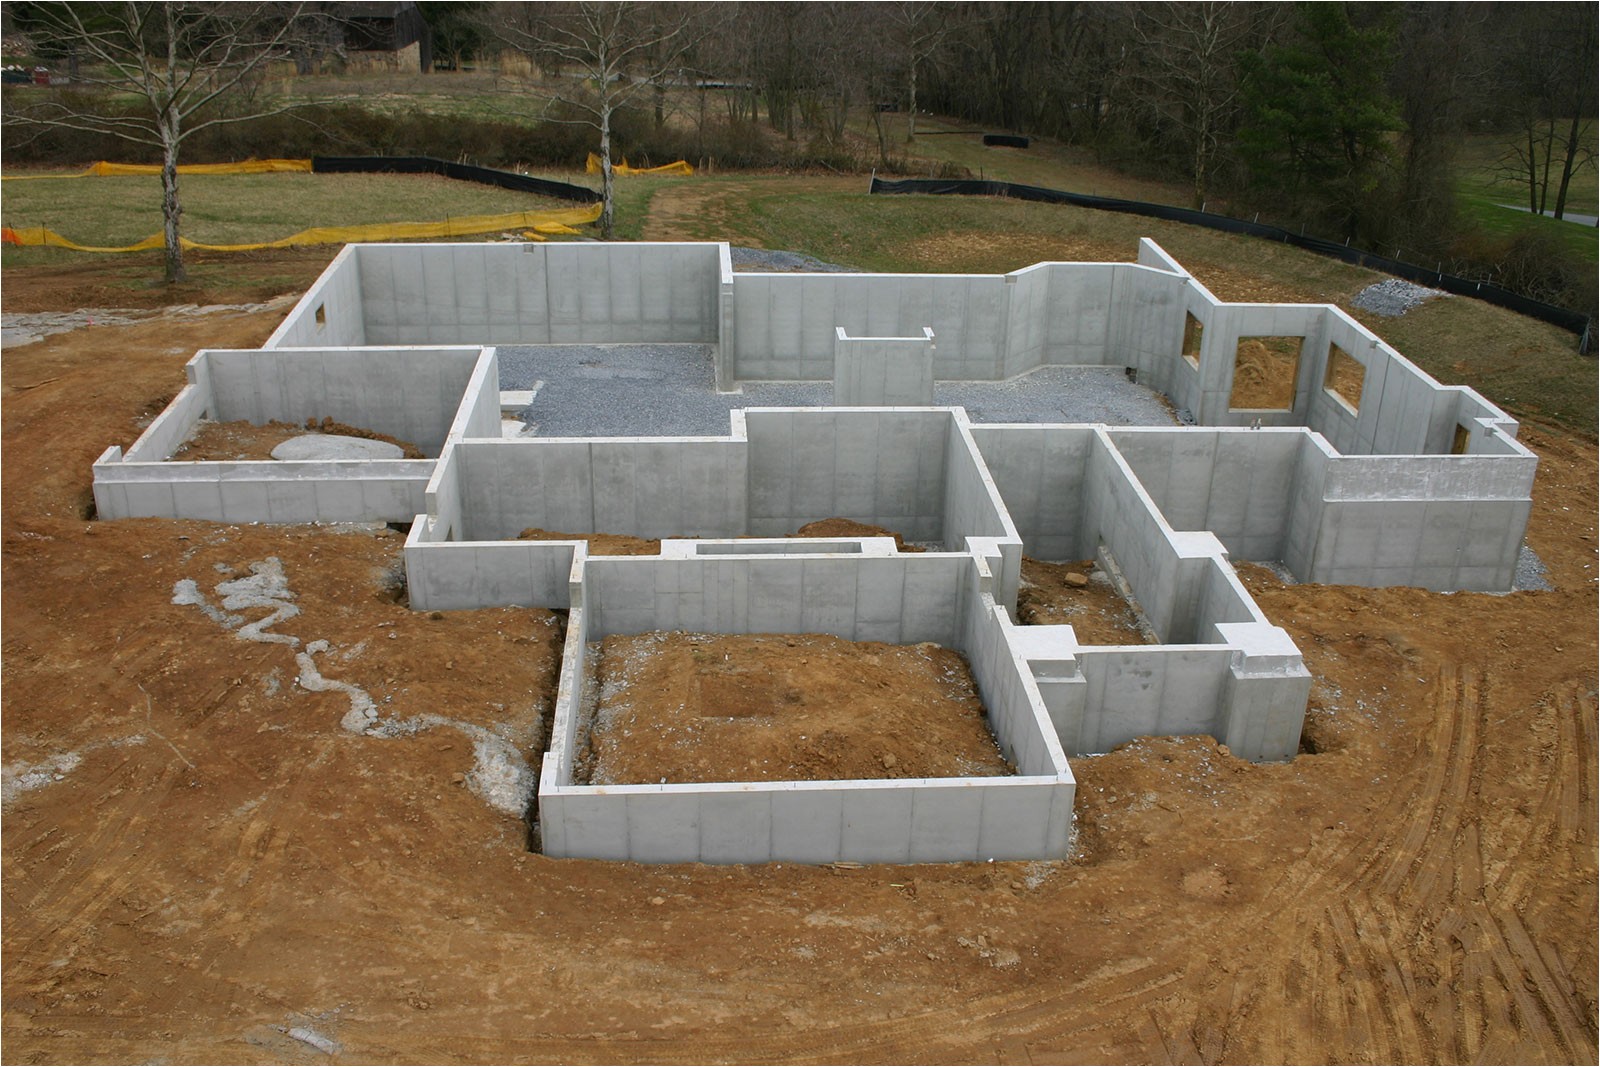 Poured Concrete Home Plans Poured Concrete Walls Cost Ipefi Com